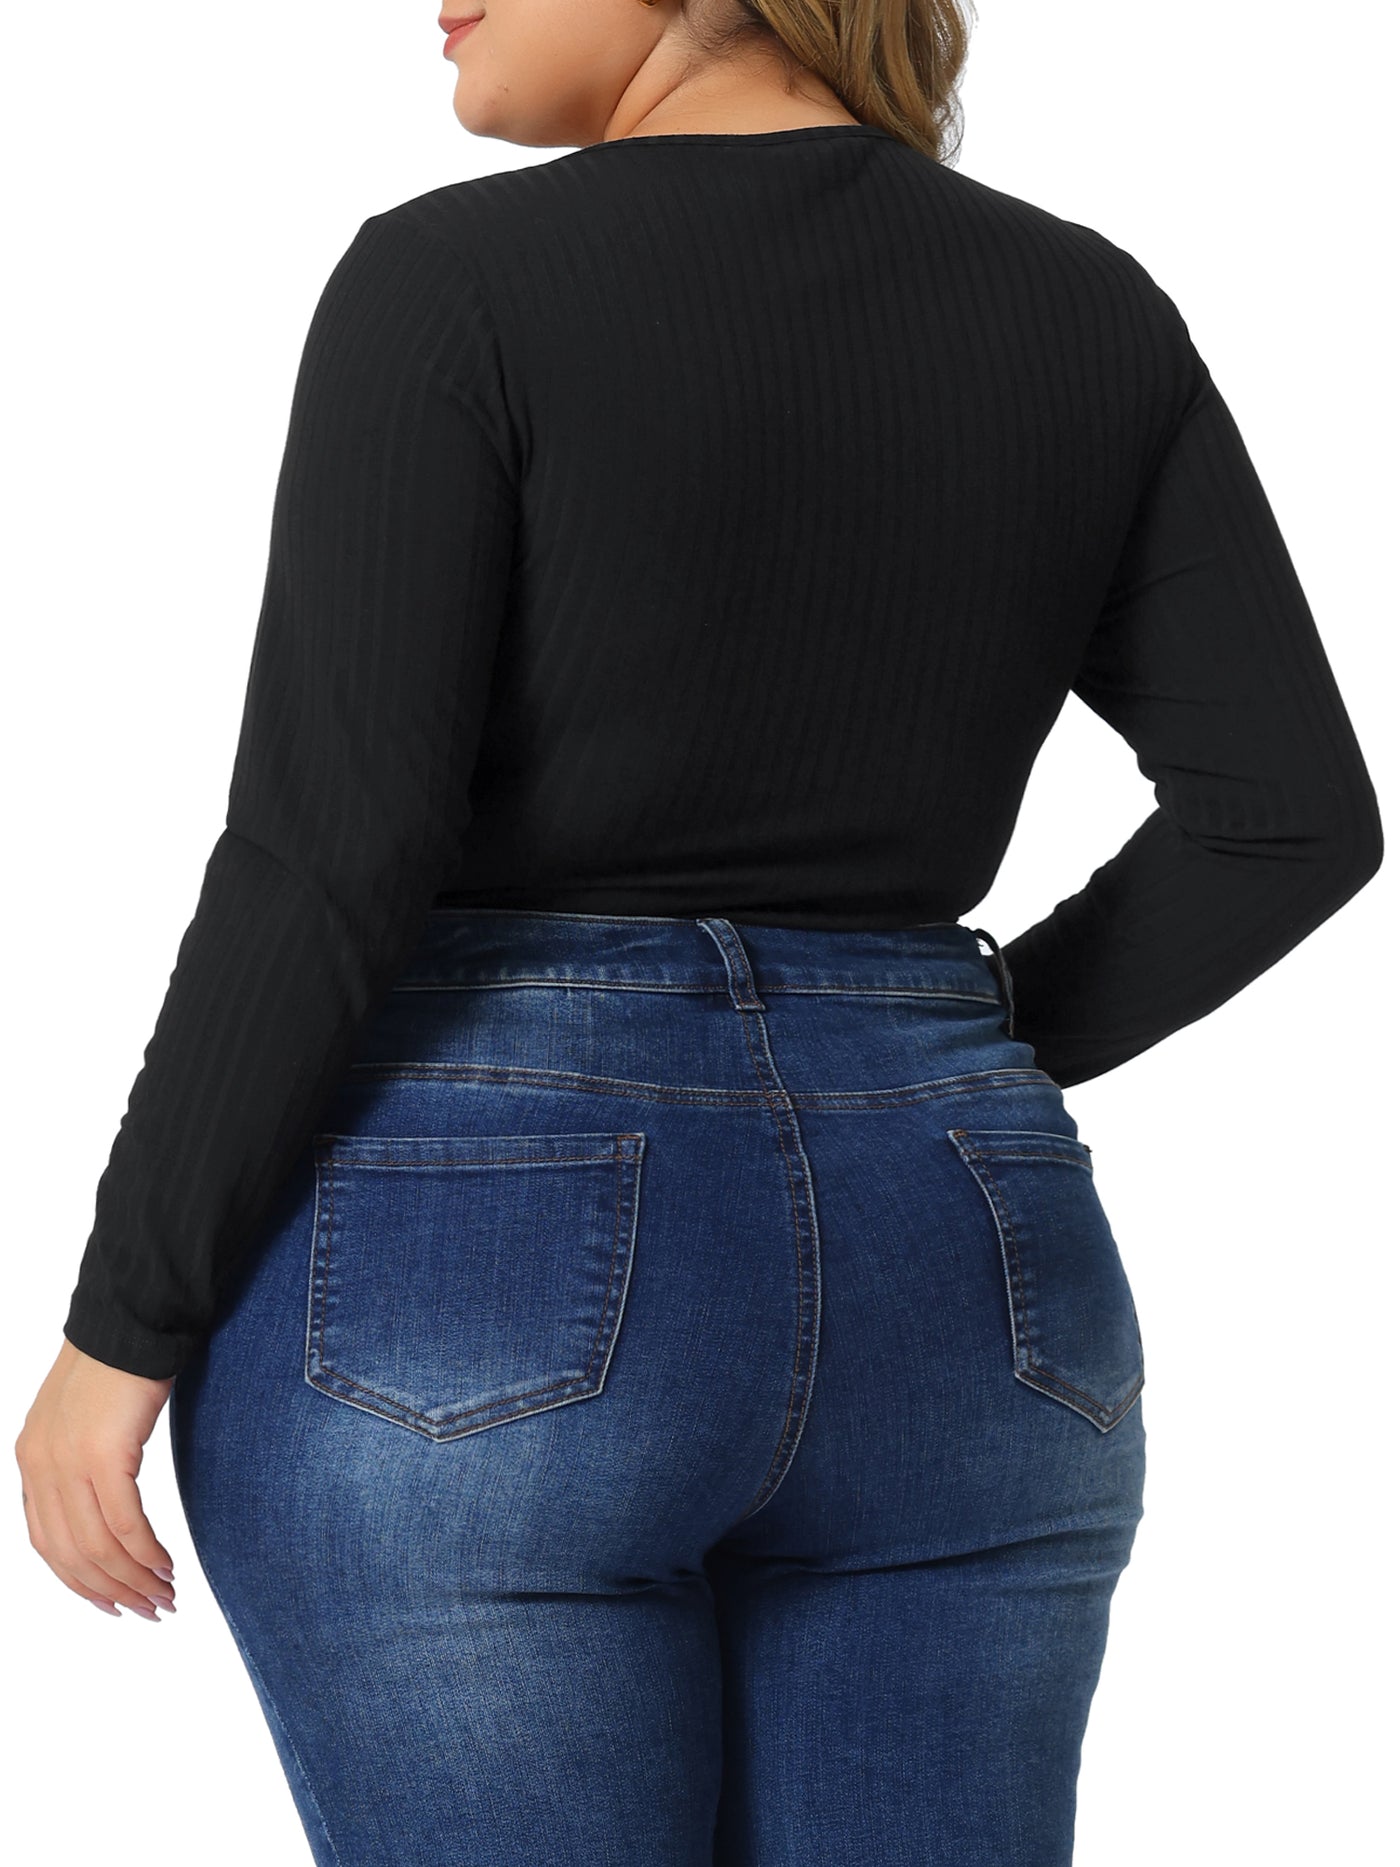 Bublédon Plus Size Bodysuits for Women Deep V Neck Zip Up Long Sleeve Tops Bodysuit Jumpsuit